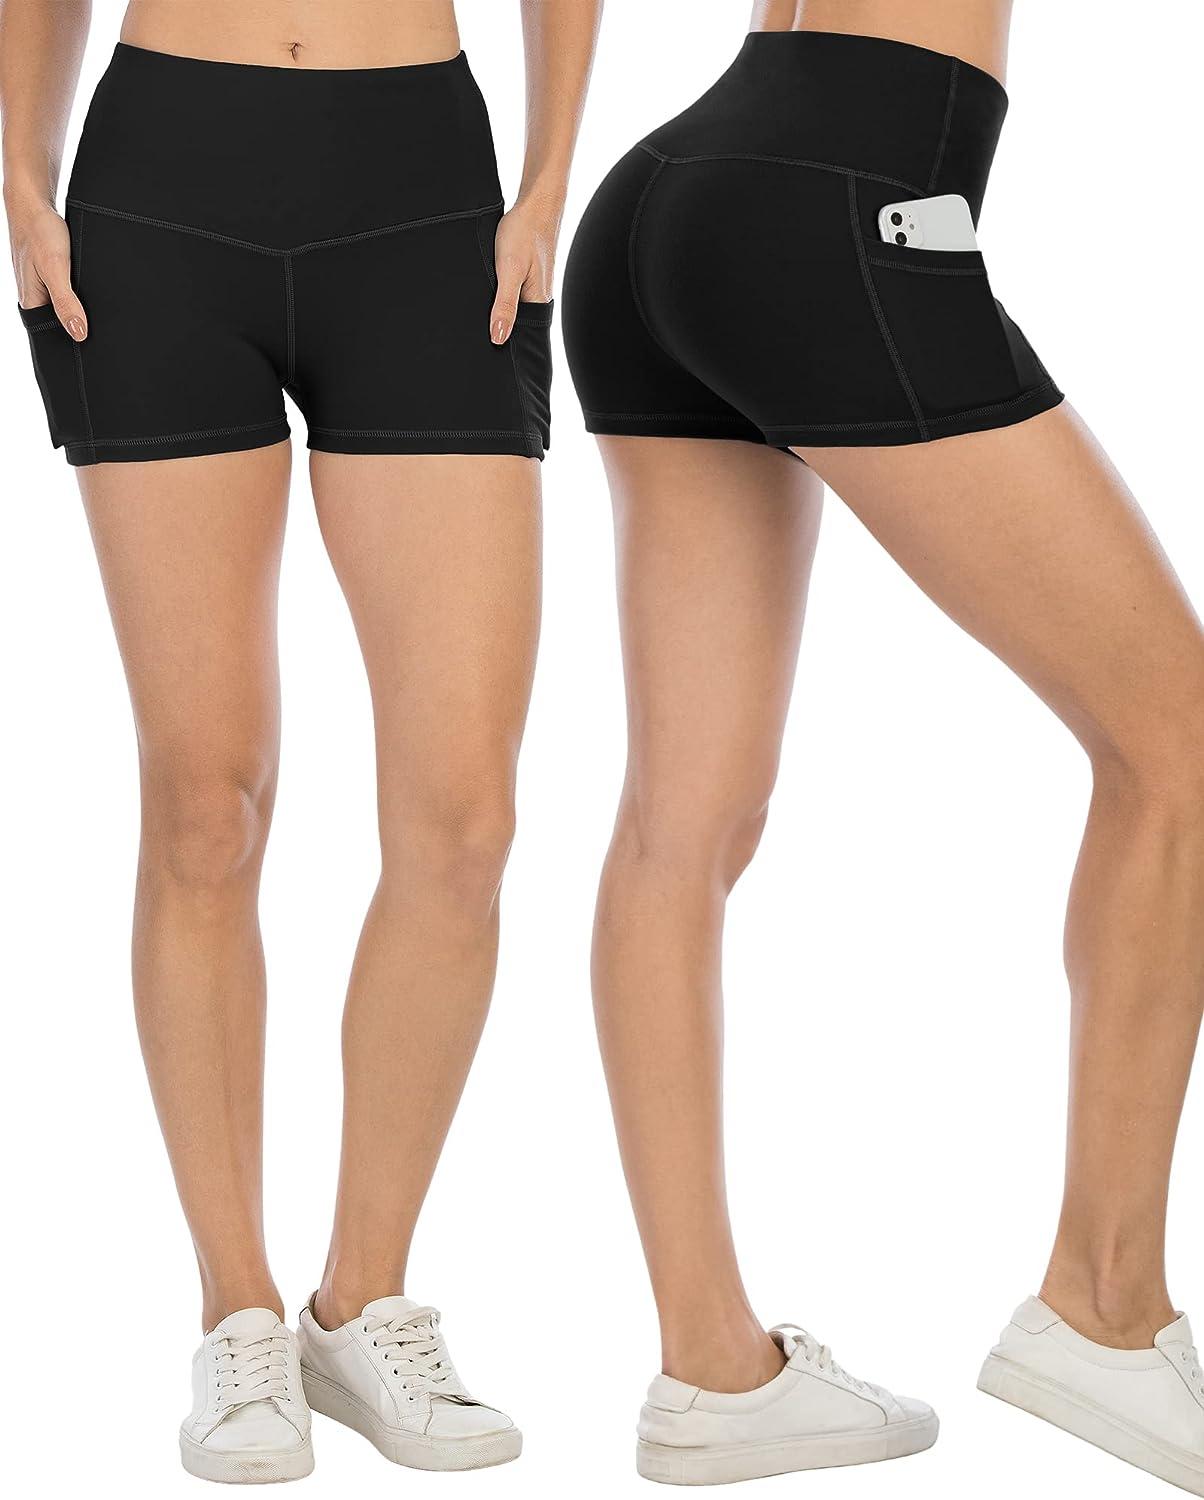 Spandex Yoga Shorts 